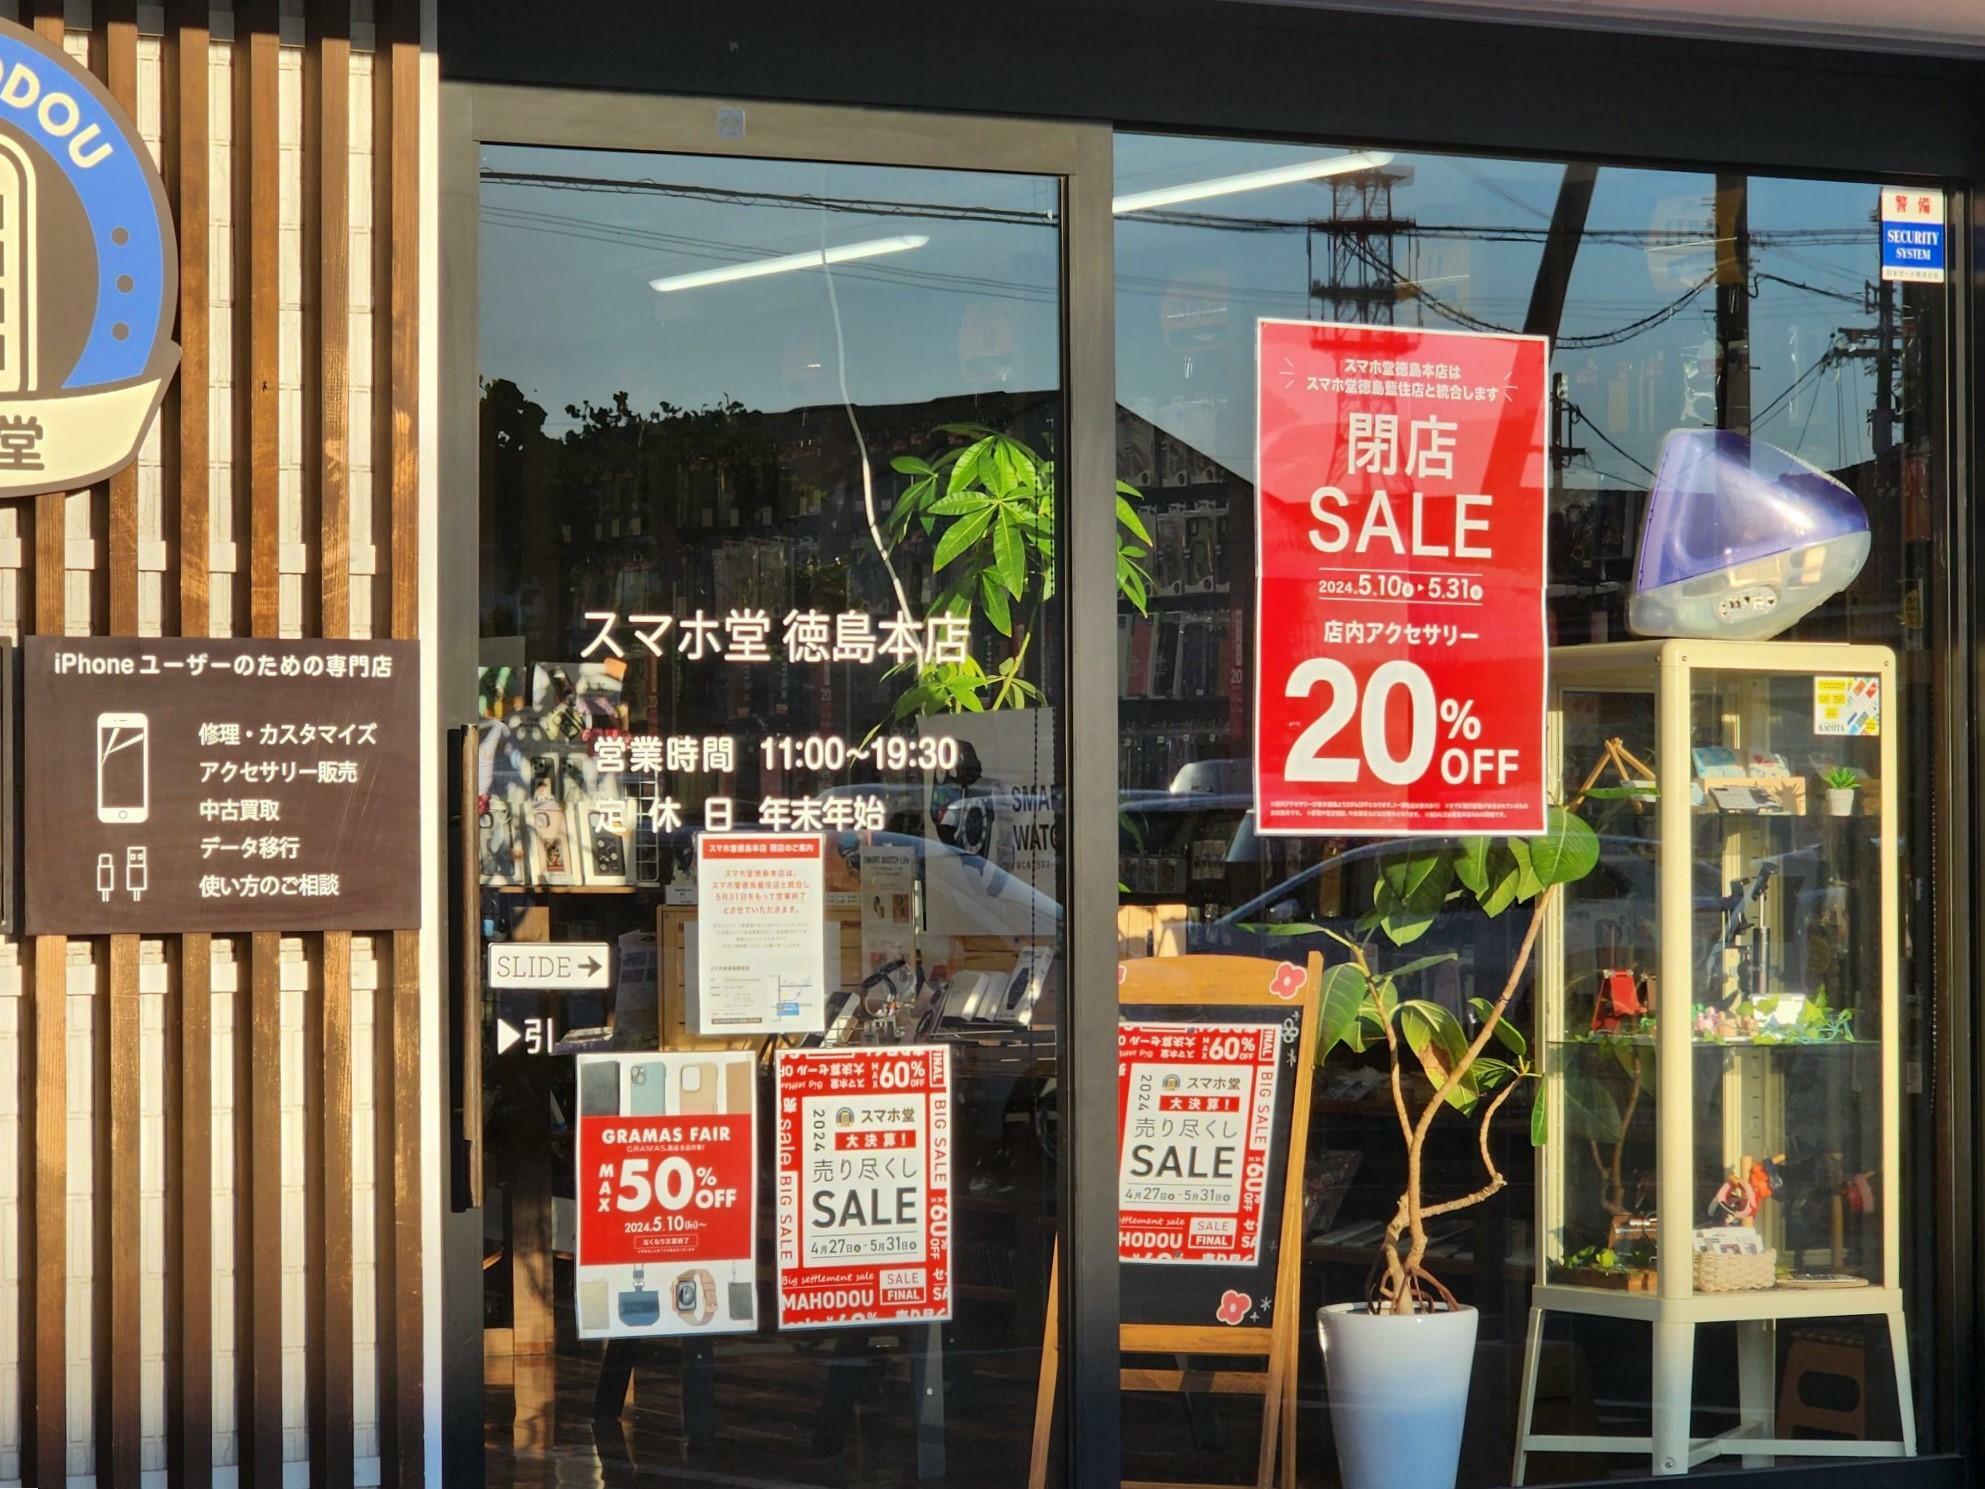 「スマホ堂 徳島本店」出入口と決算セールと閉店セールに関する告知物。